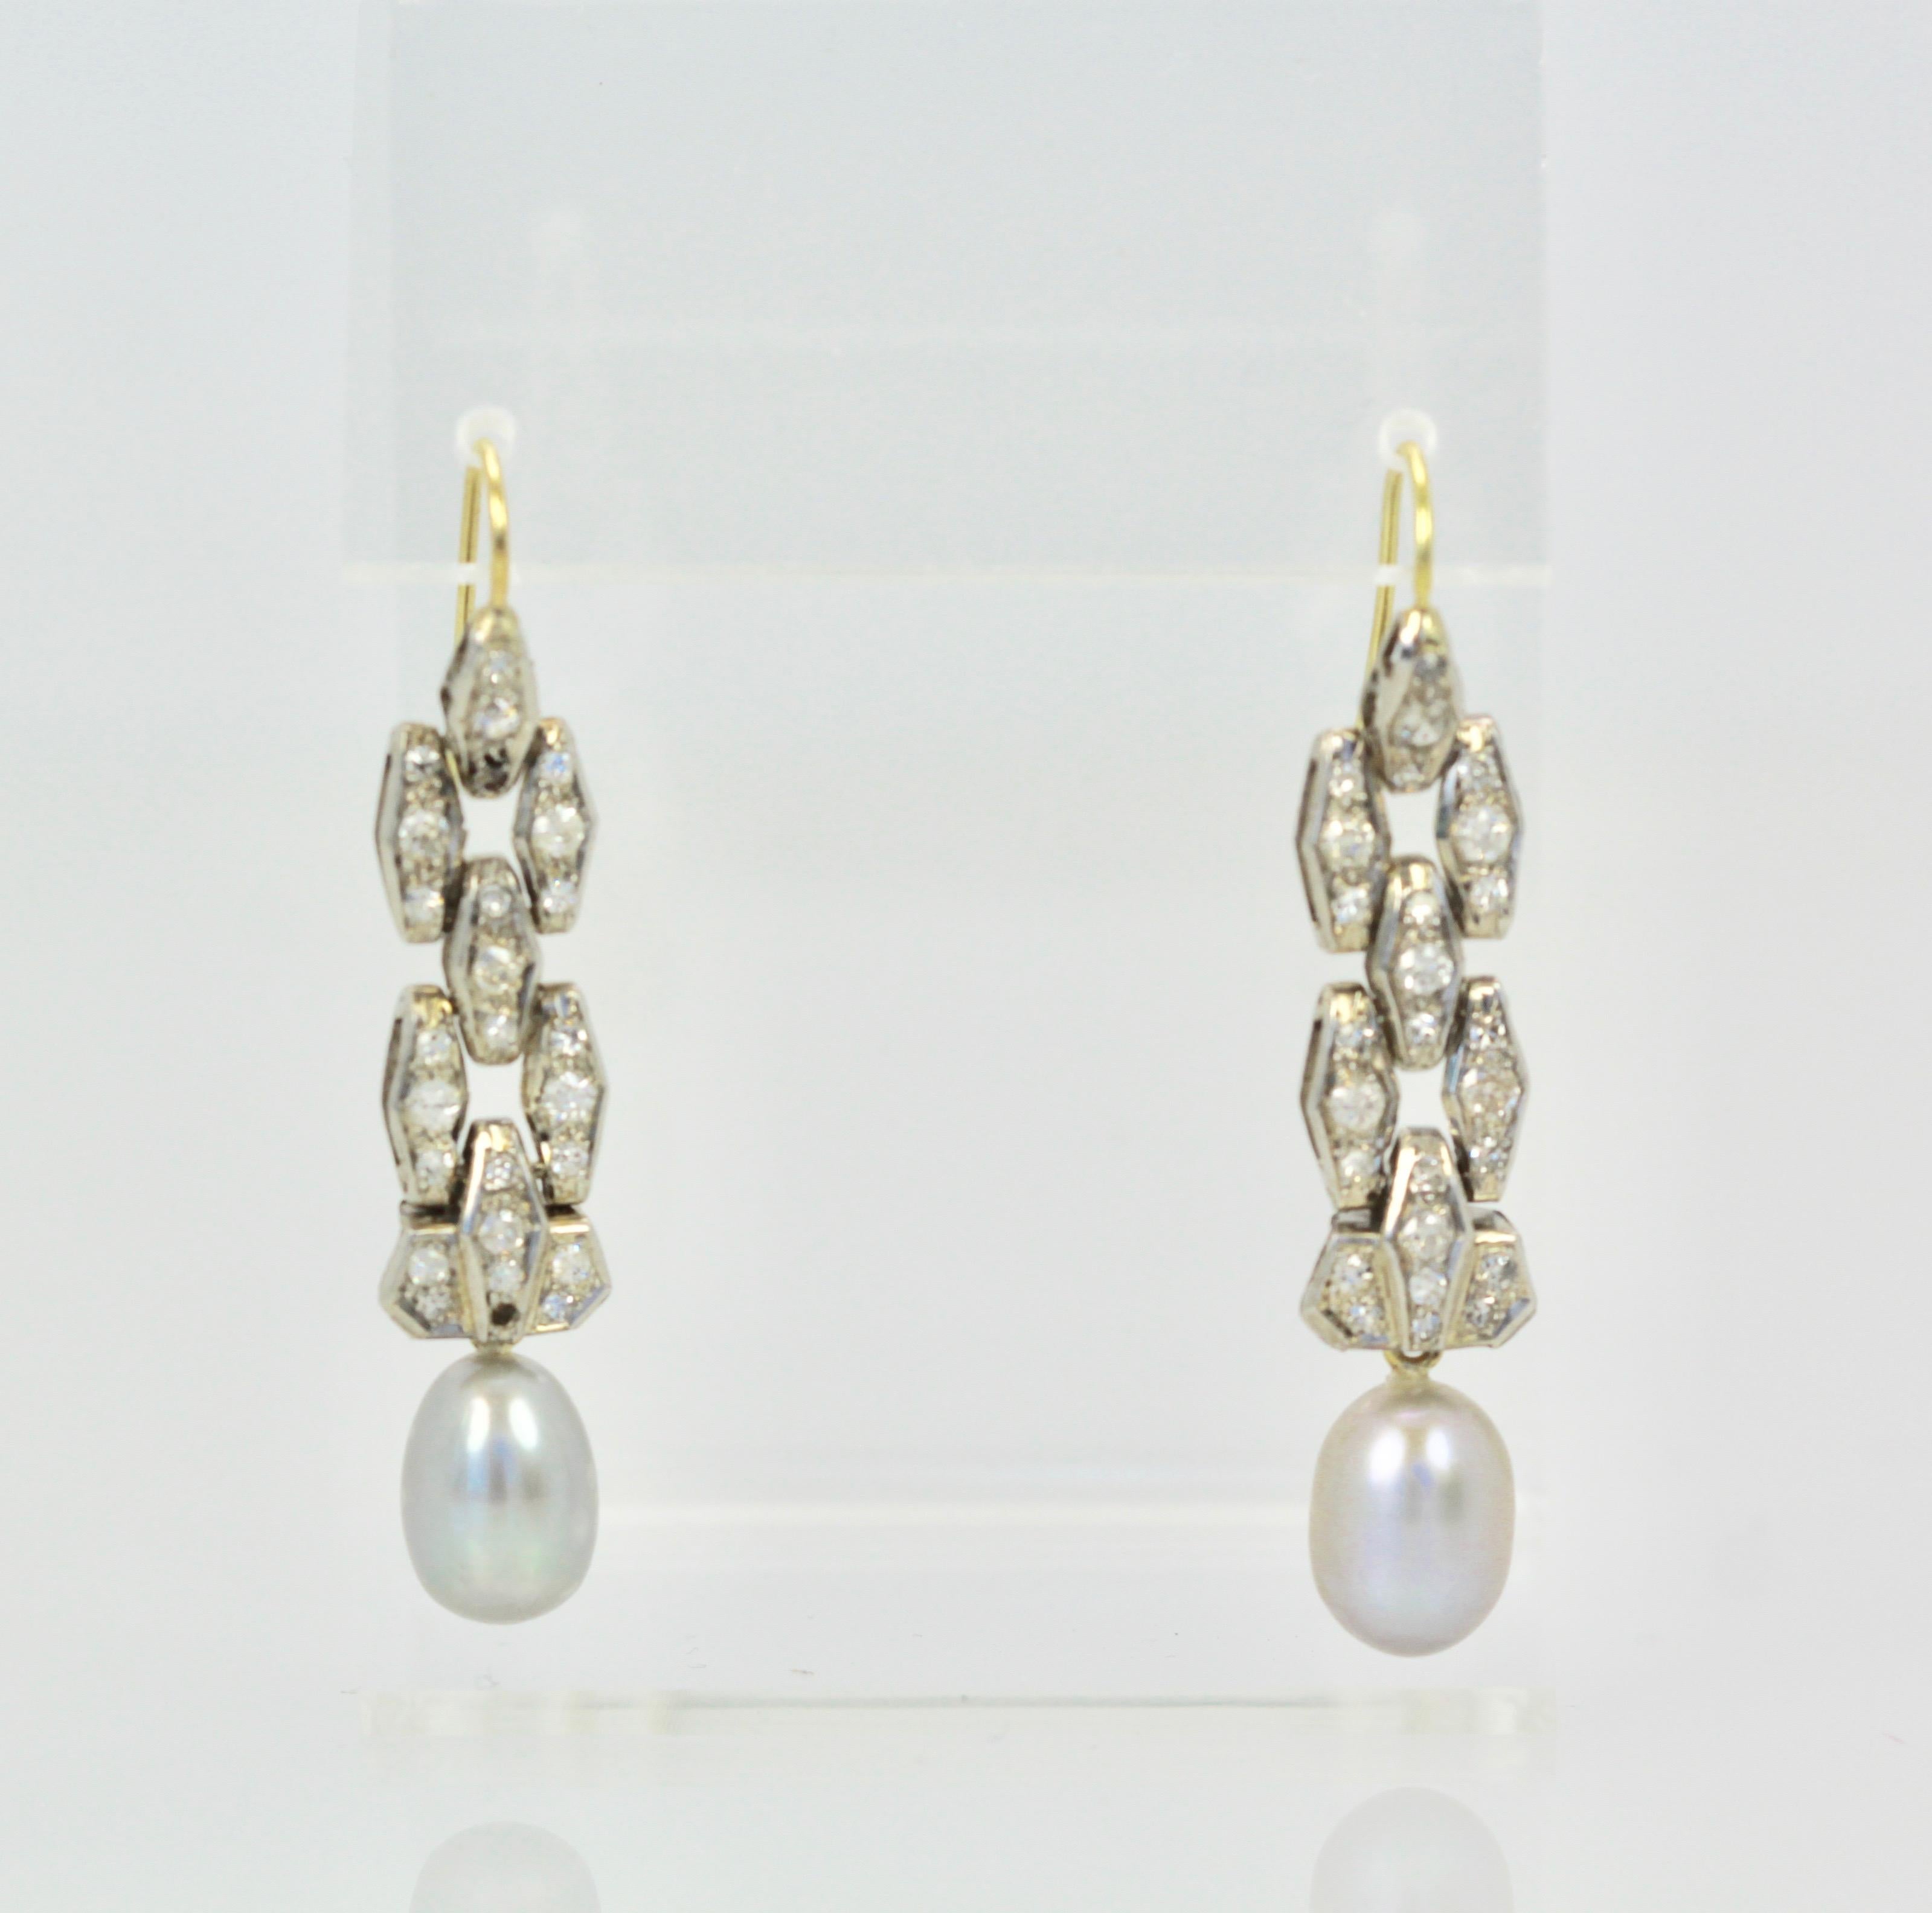 Diese hübschen Deko-Diamant-Perlen-Ohrringe kommen aus Irland und sind 1 cm breit und 4,5 cm lang.  Die Diamanten erinnern mich an ein altes Deco-Armband oder Teile davon, aber ich habe sie so gekauft, wie sie ist.  Die Perlen sind 1,2 cm lang und